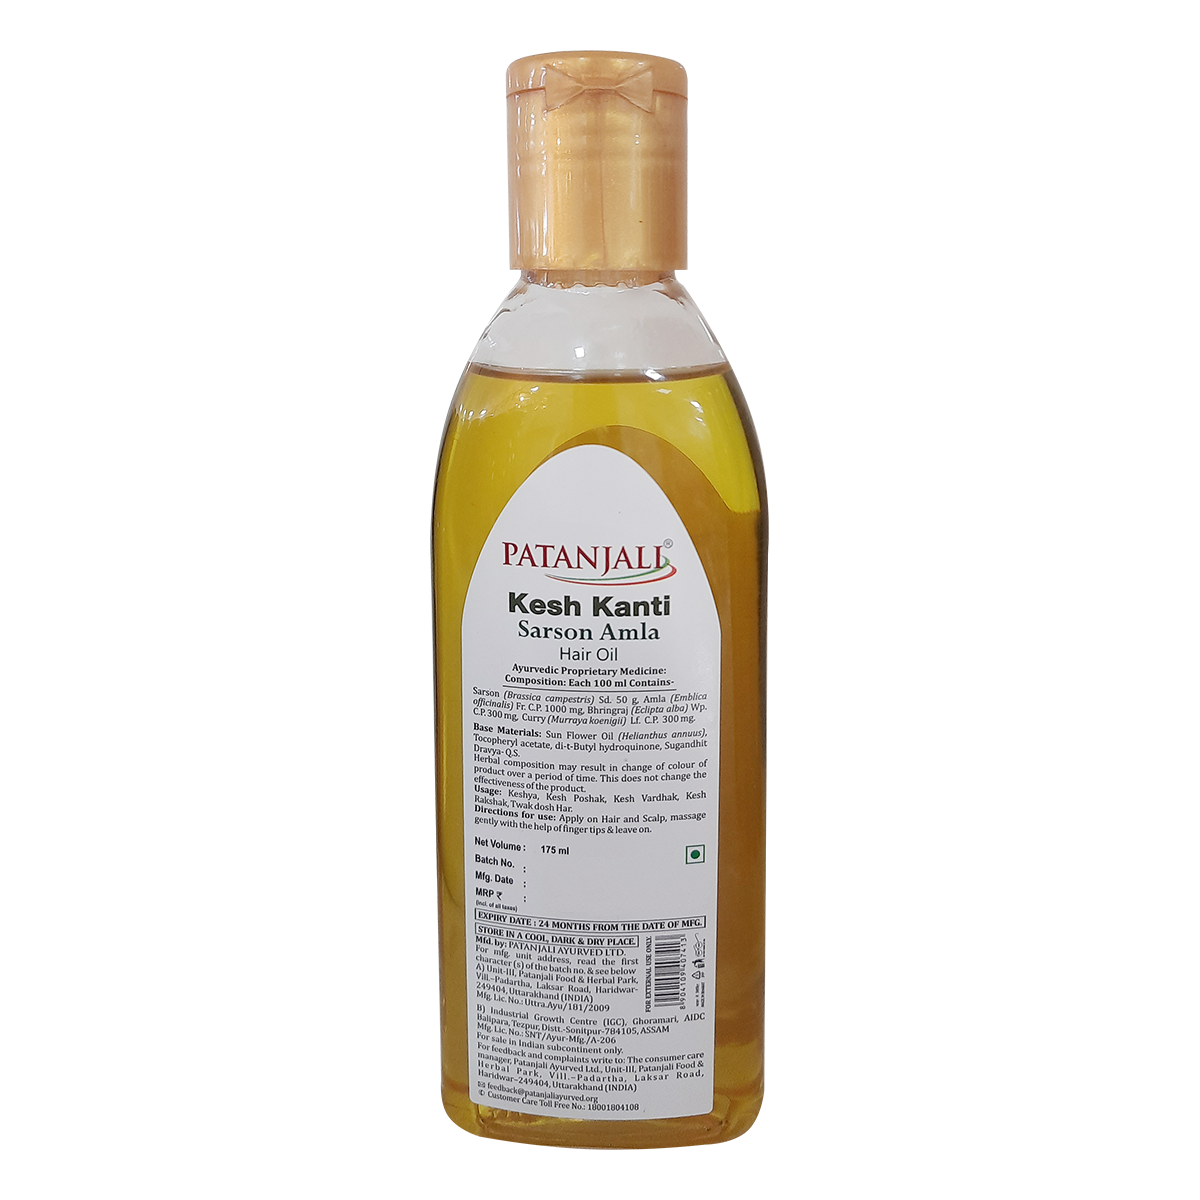 Patanjali Kesh Kanti Hair Oil | Product by Patanjali Ayurveda - YouTube